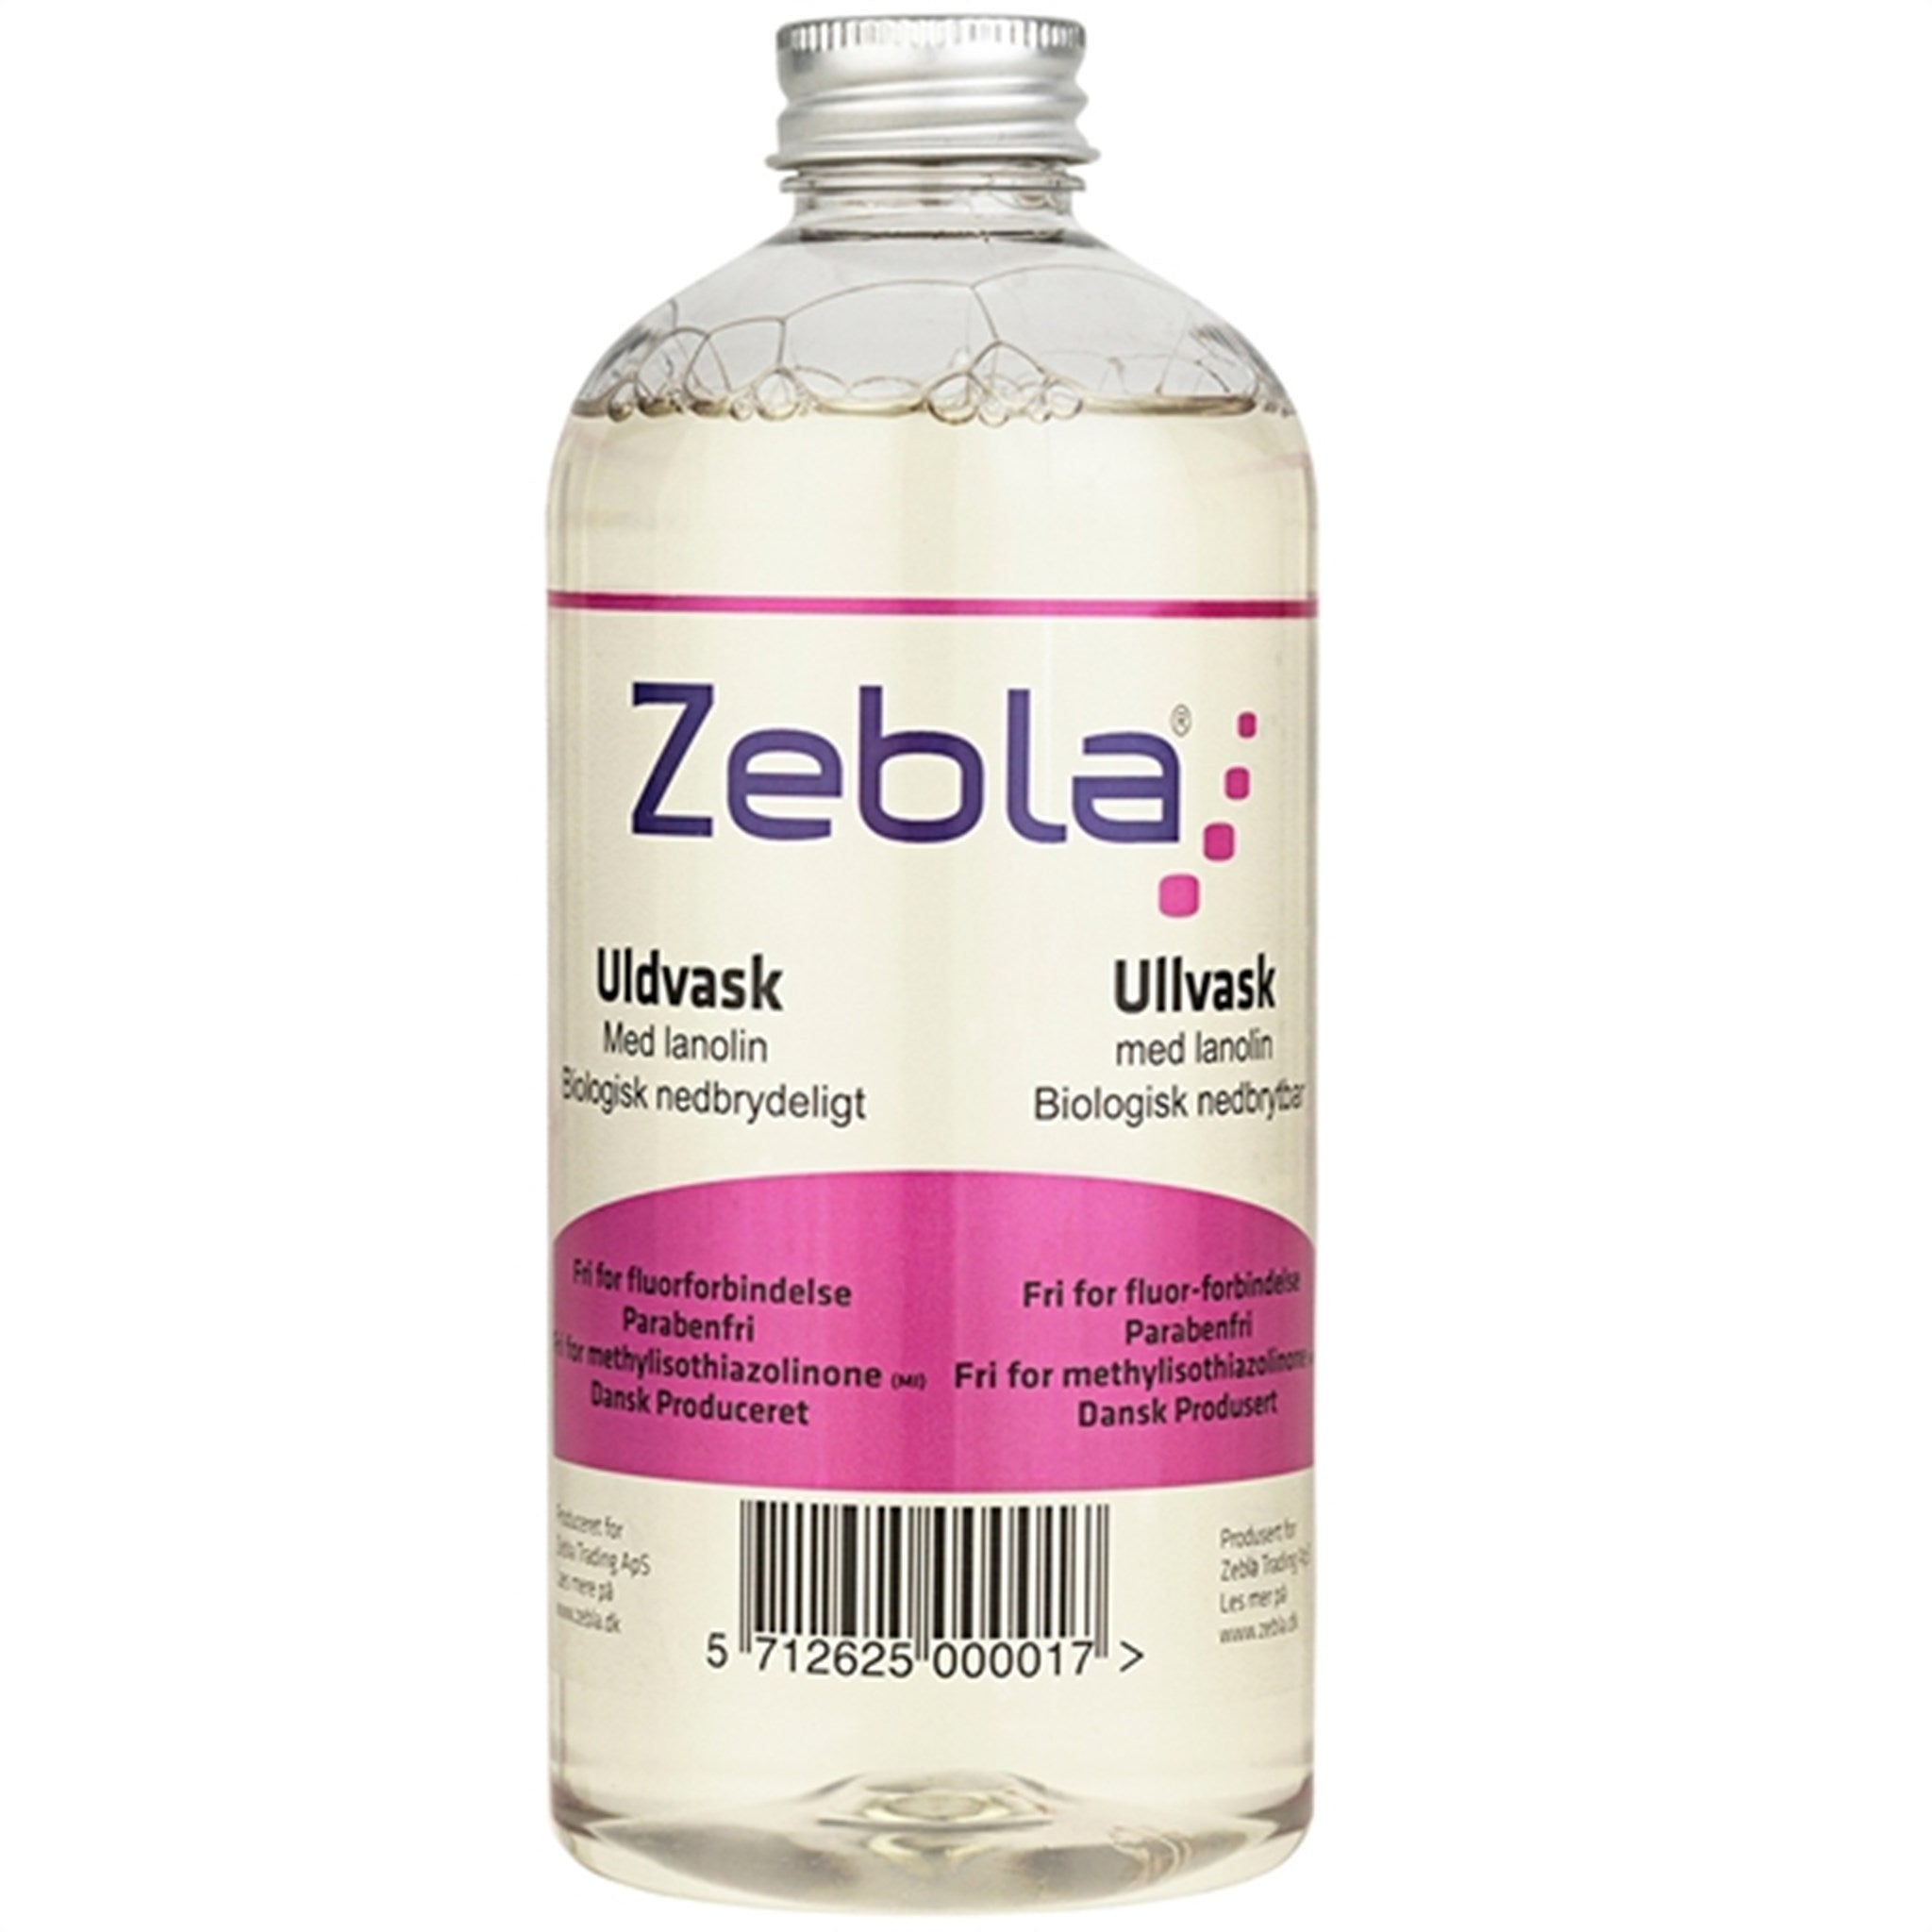 Zebla 500毫升羊毛洗涤剂与羊毛脂 - 羊毛服装的护理与保养